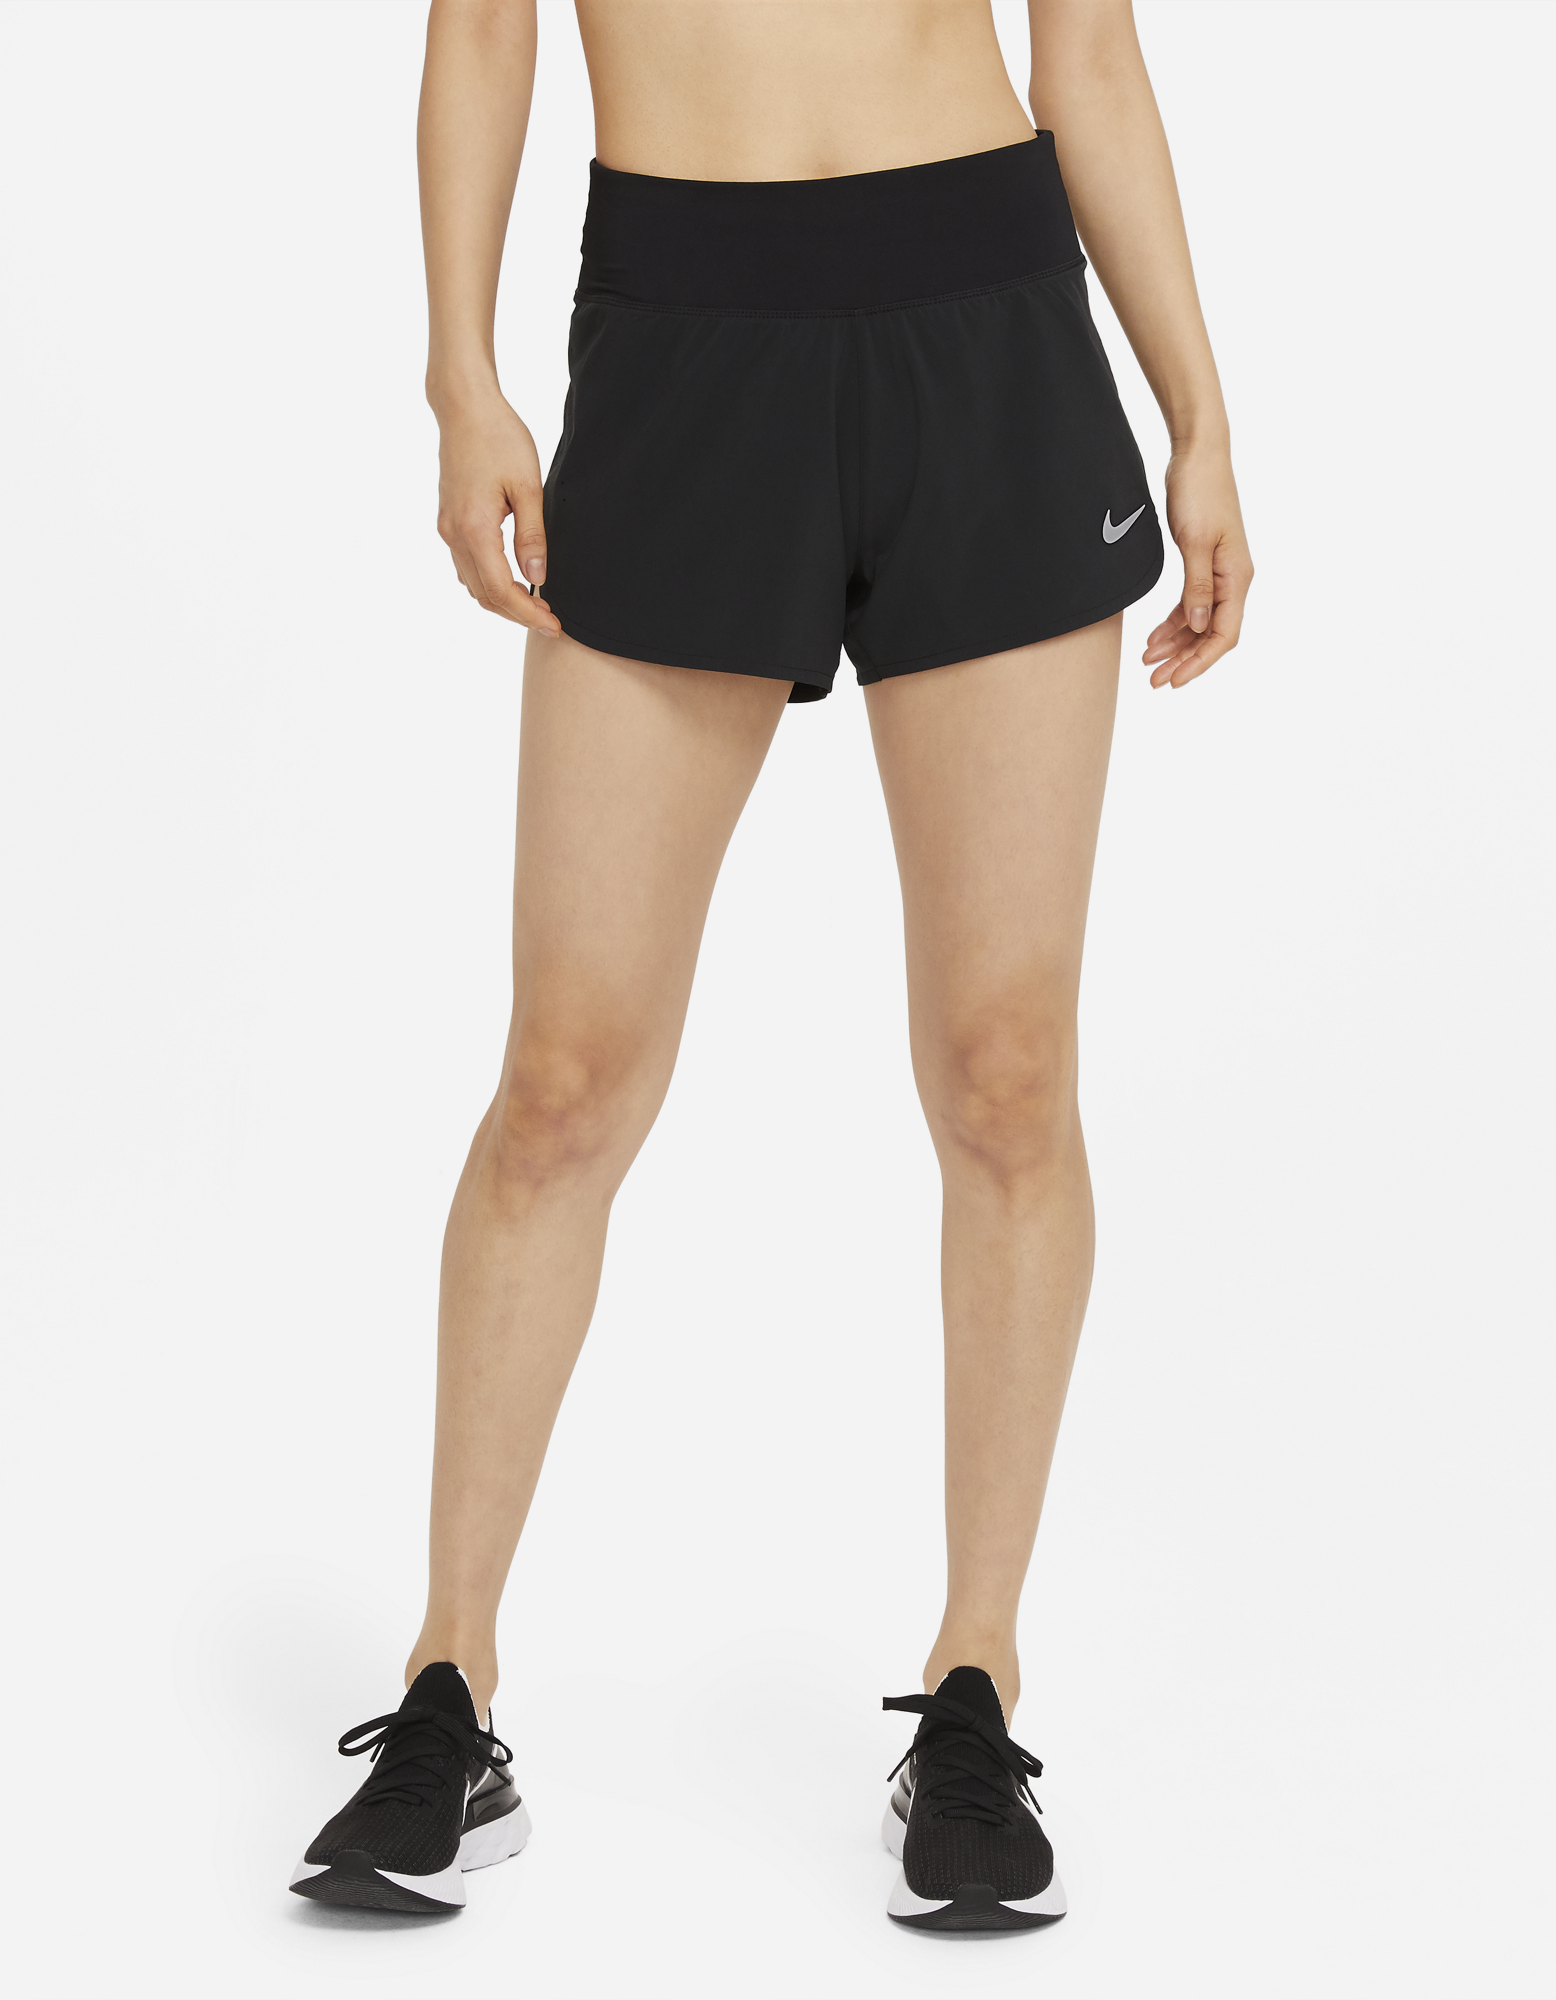 Nike Eclipse Short - Women's CZ9580-010